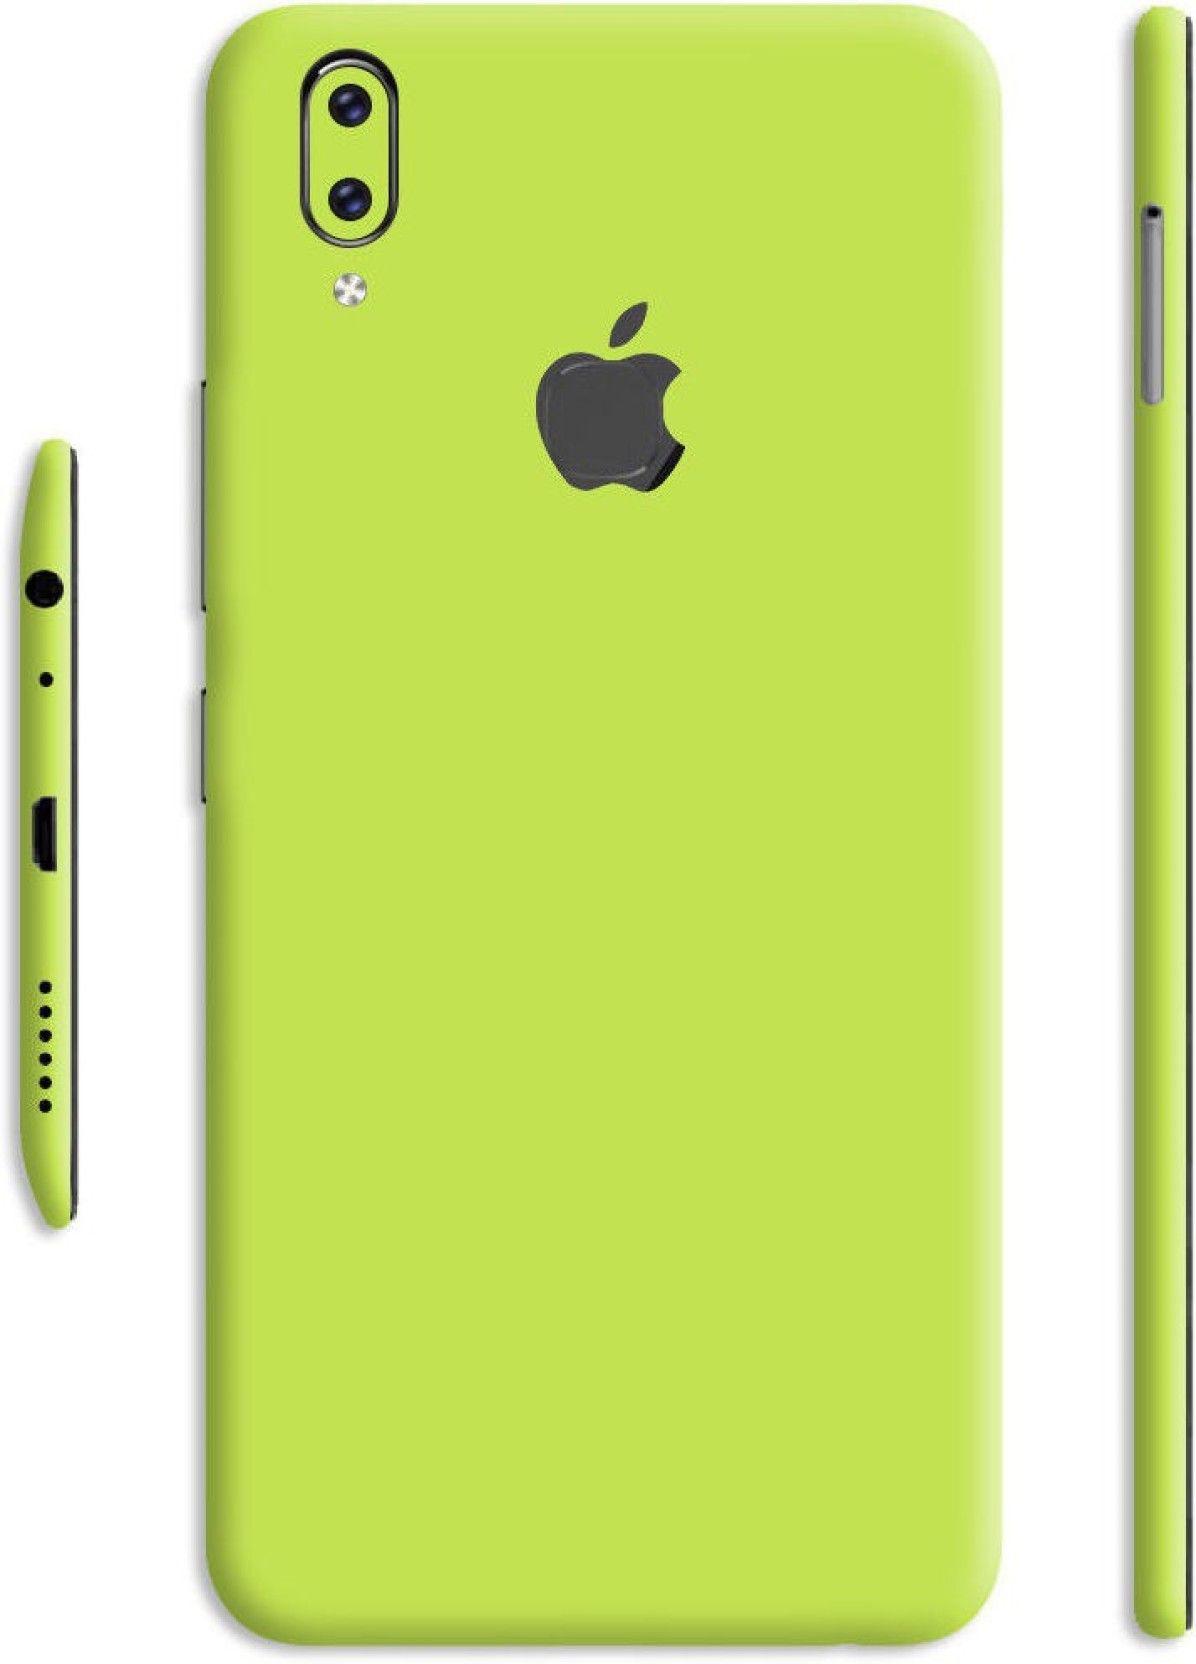 Lemon Phone Logo - SLICKWRAPS Skin-1744 - Converter Apple Logo Lemon Green Glossy Skin ...